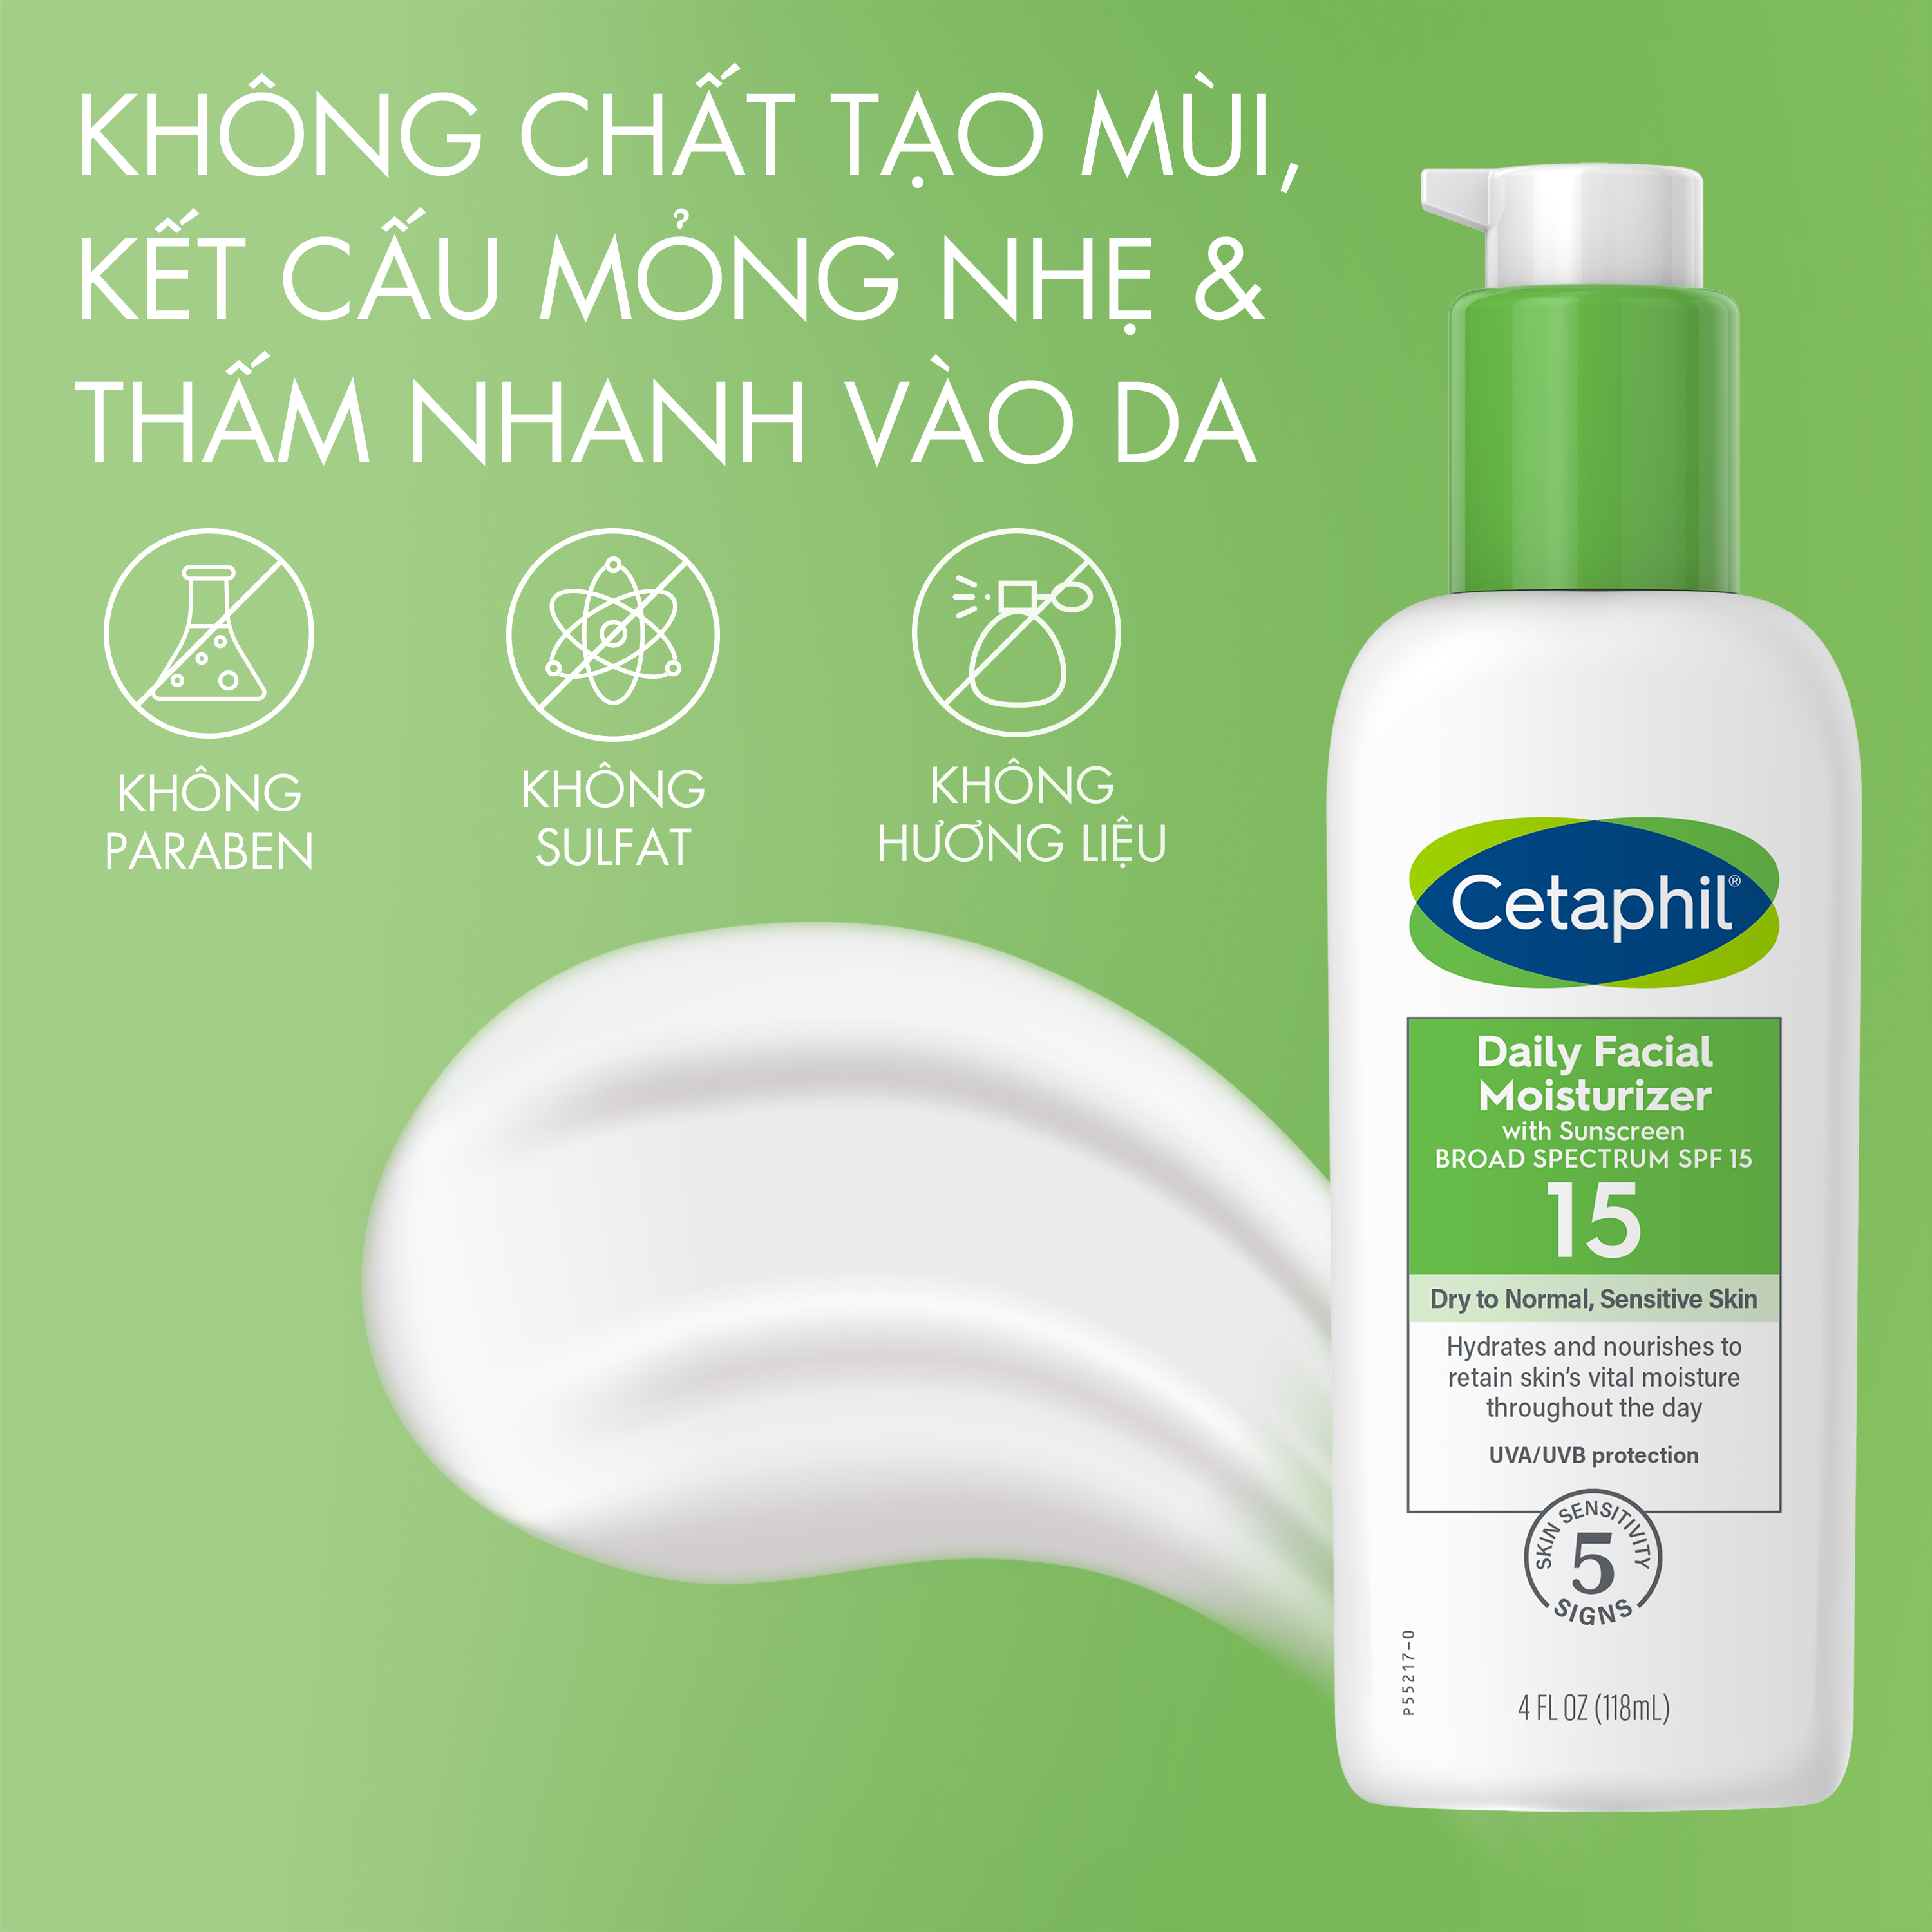 Cetaphil Daily Facial Moisturizer with SPF 15 đáp ứng mọi tiêu chí ở sản phẩm kem chống nắng dành cho da dầu mụn, dễ nhạy cảm.